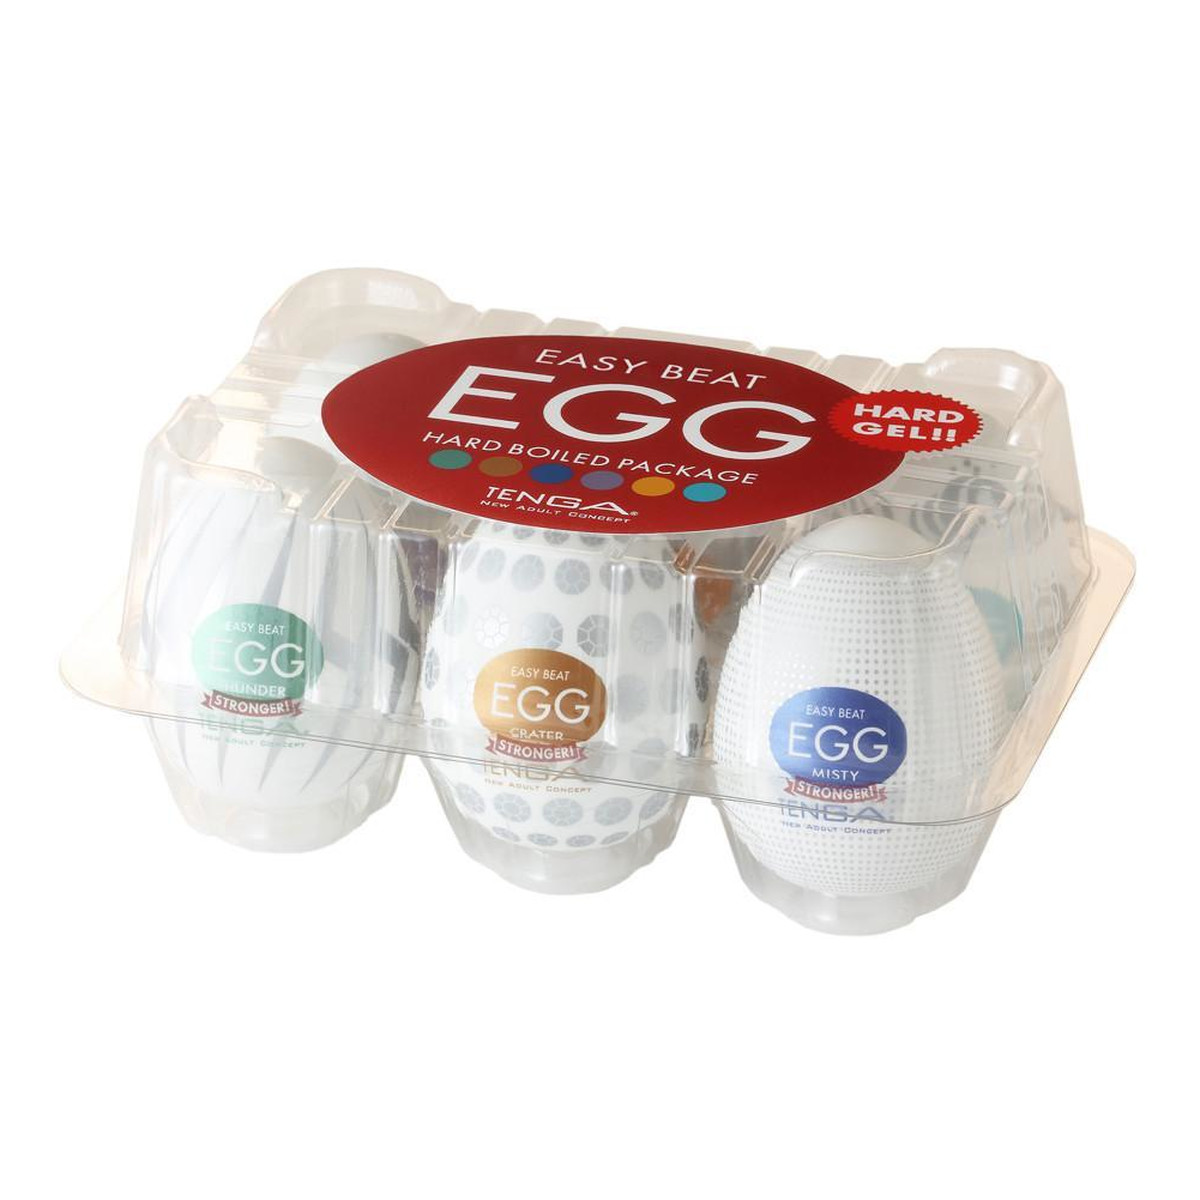 Tenga 6 Styles Easy Beat Egg Hard Boiled Package Zestaw 6 jednorazowych masturbatorów w kształcie jajka